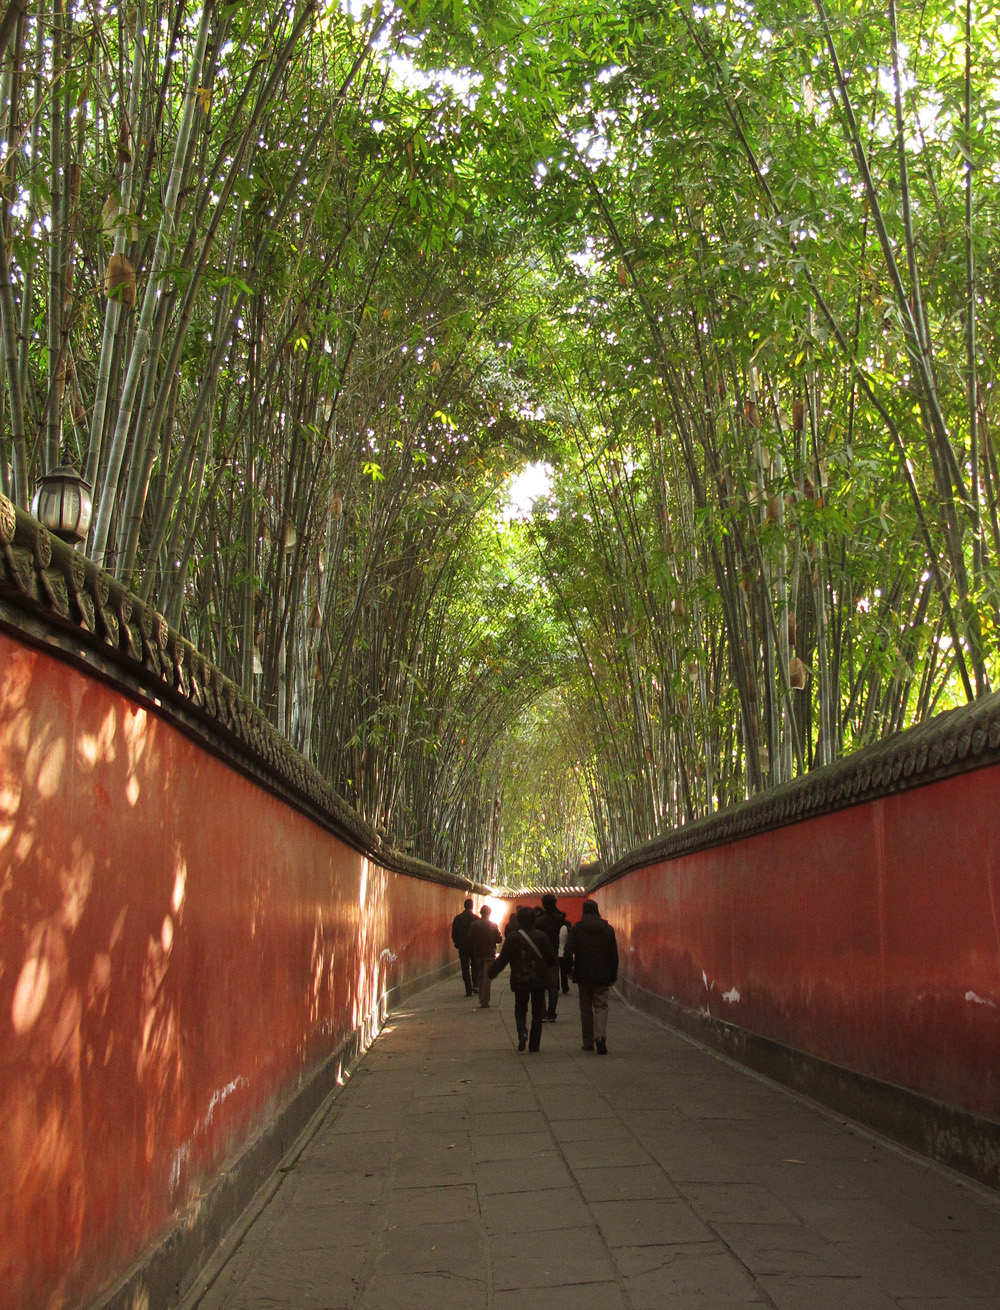 Bamboo Hallway at Wuhou Temple | Chengdu, China